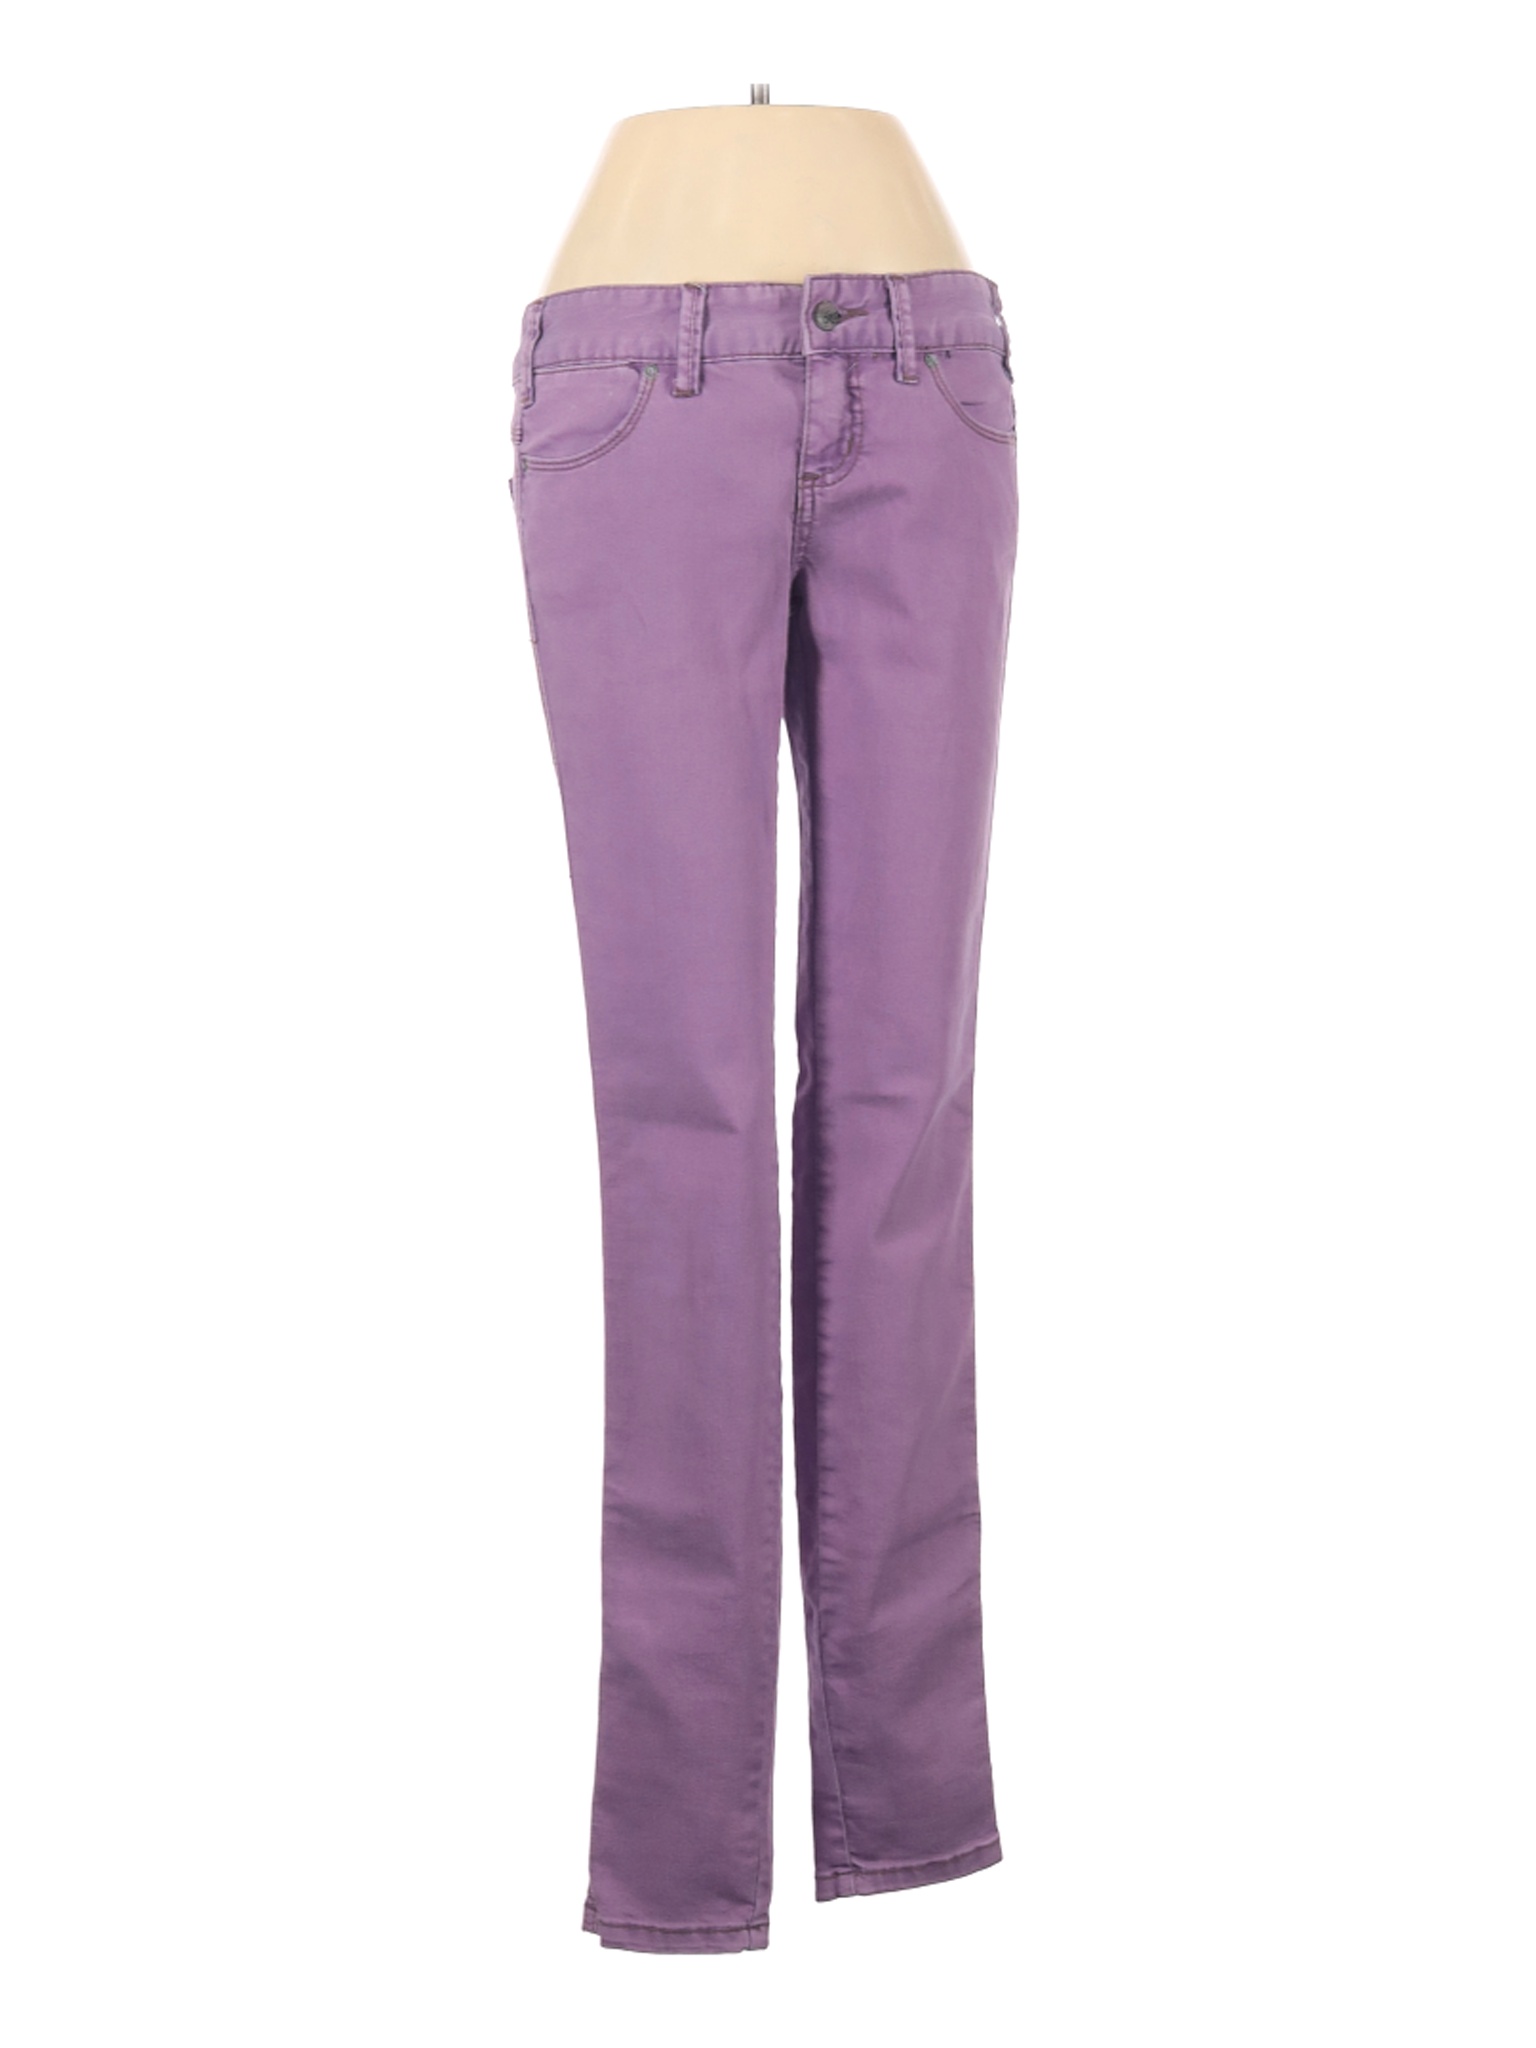 Free People Women Purple Jeans 26W | eBay